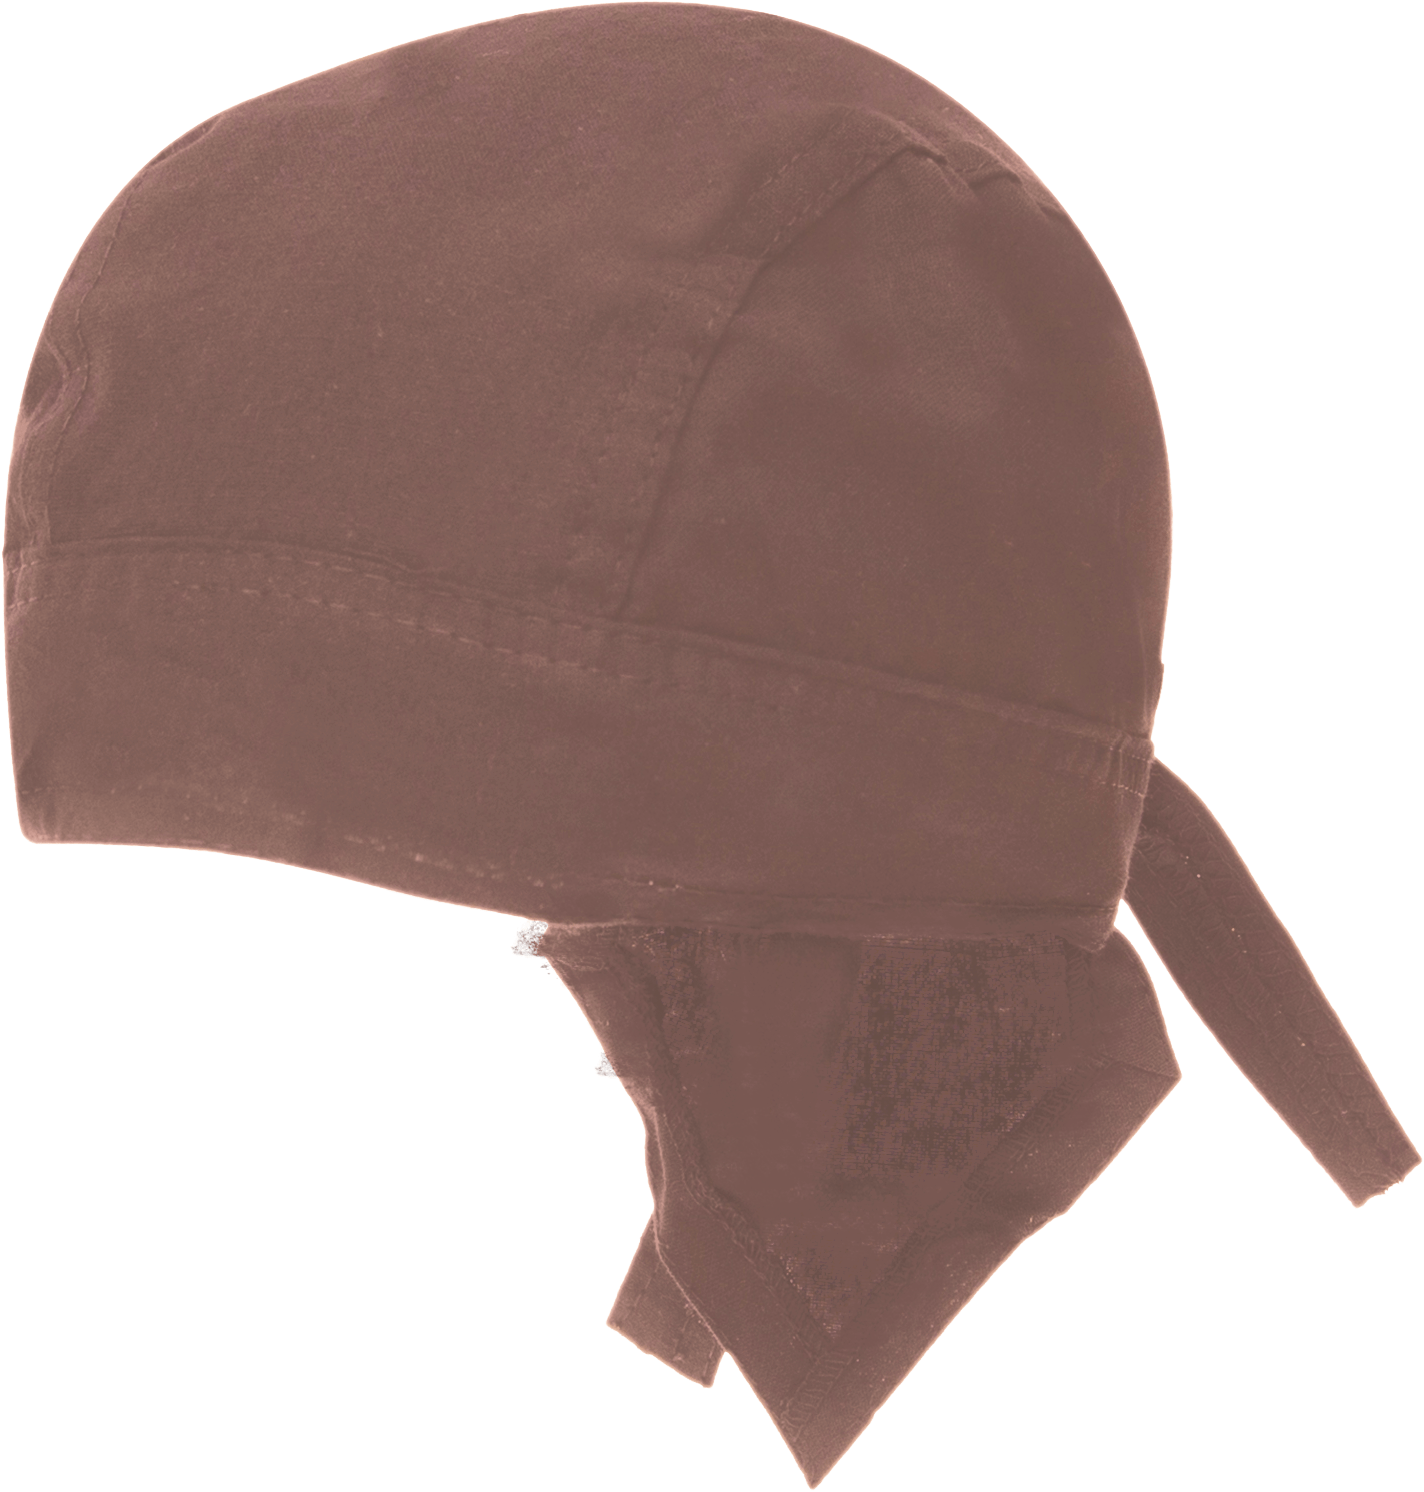 600pcs Brown Solid Color Head Wrap - 100% Cotton - Imported - Brown, 600pcs/Case